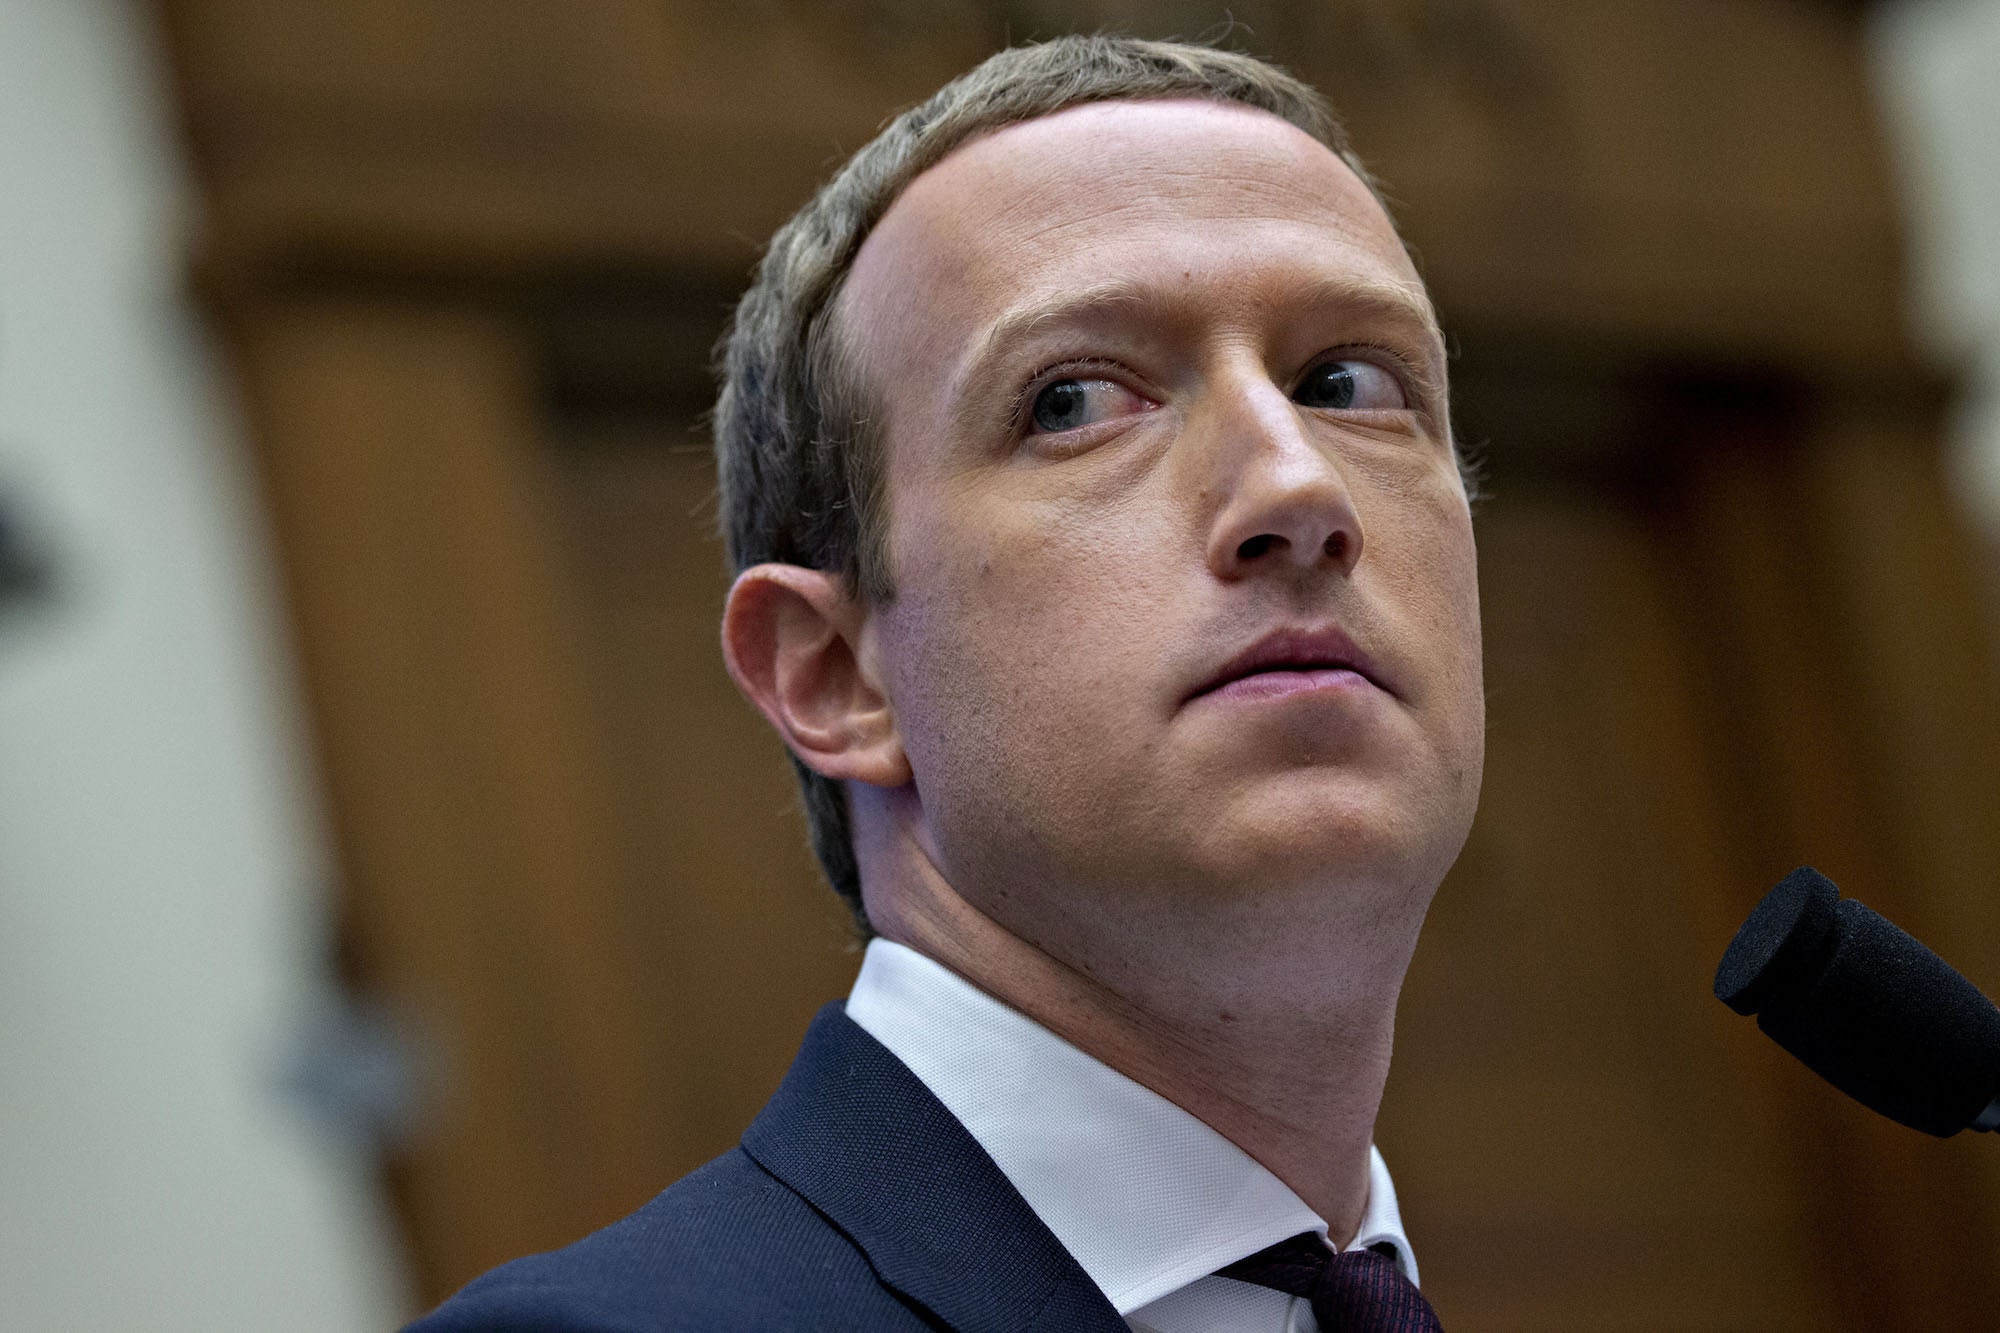 Утечка данных, саботаж или обвинения в разжигании ненависти: что на самом деле стало причиной сбоя Facebook